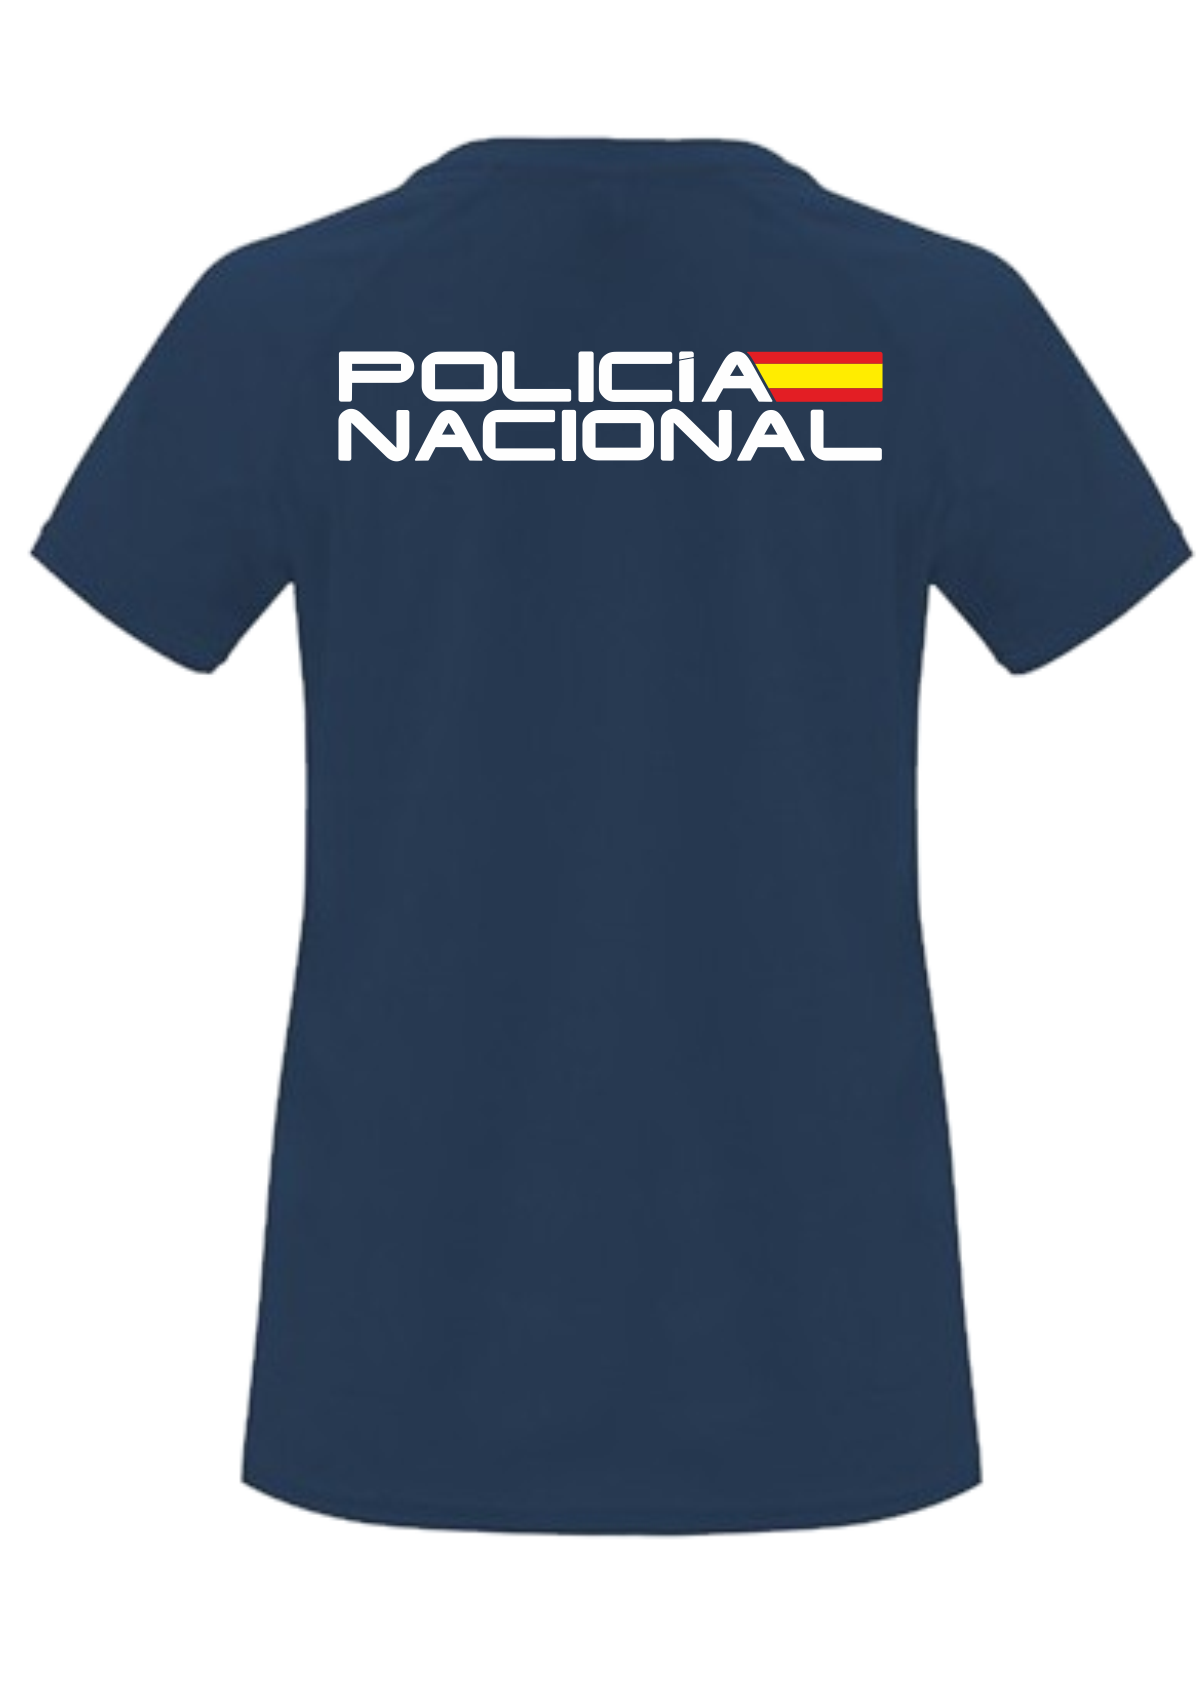 Camiseta Policía Nacional azul marino